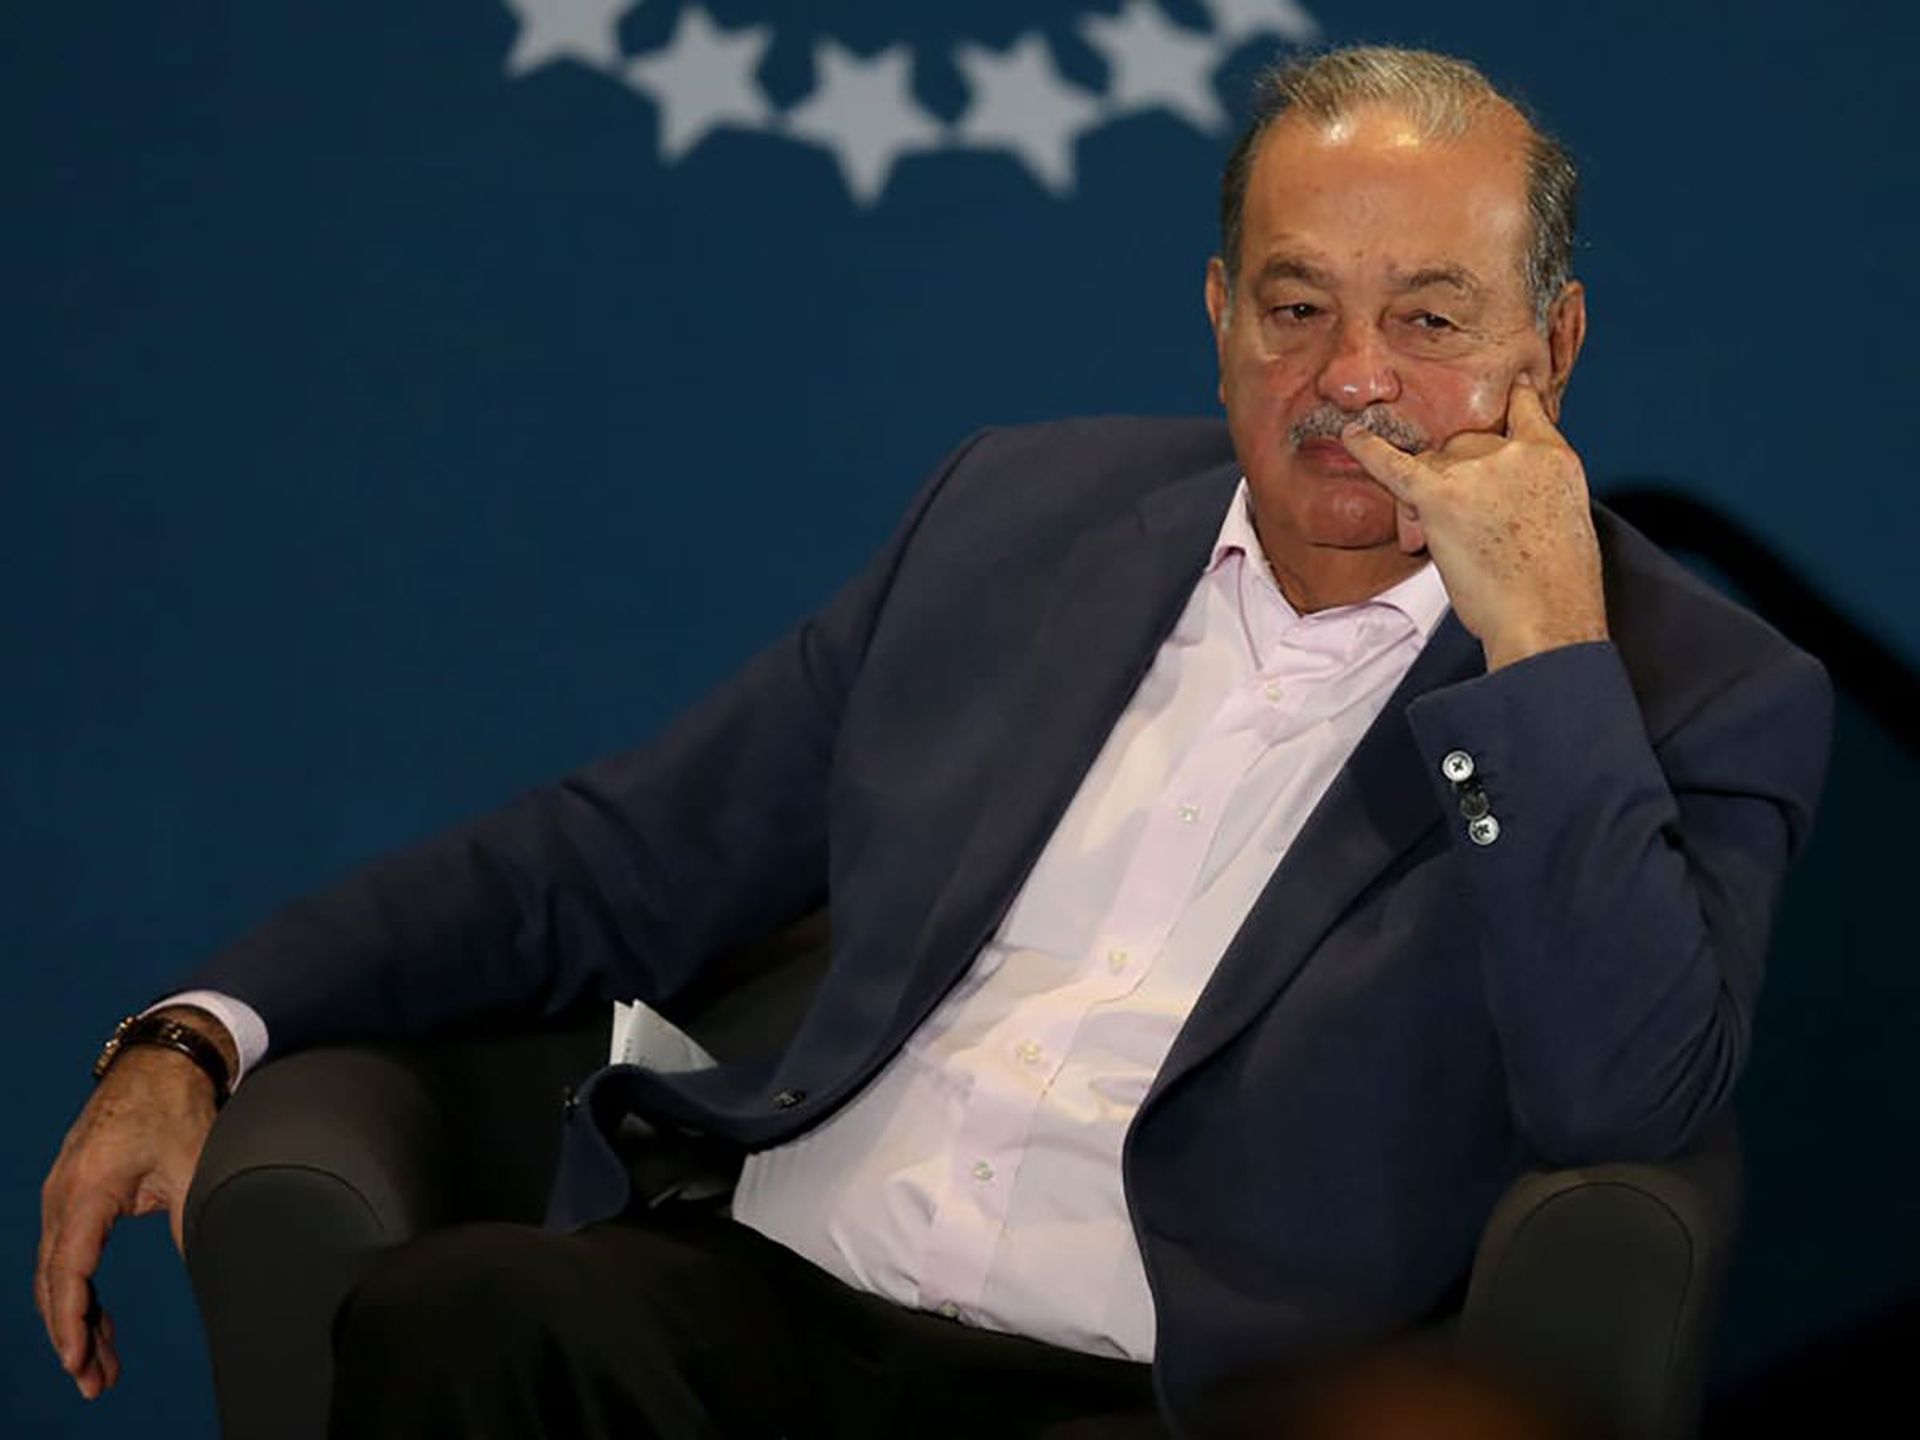 مرجع متخصصين ايران كارلوس اسليم / Carlos Slim